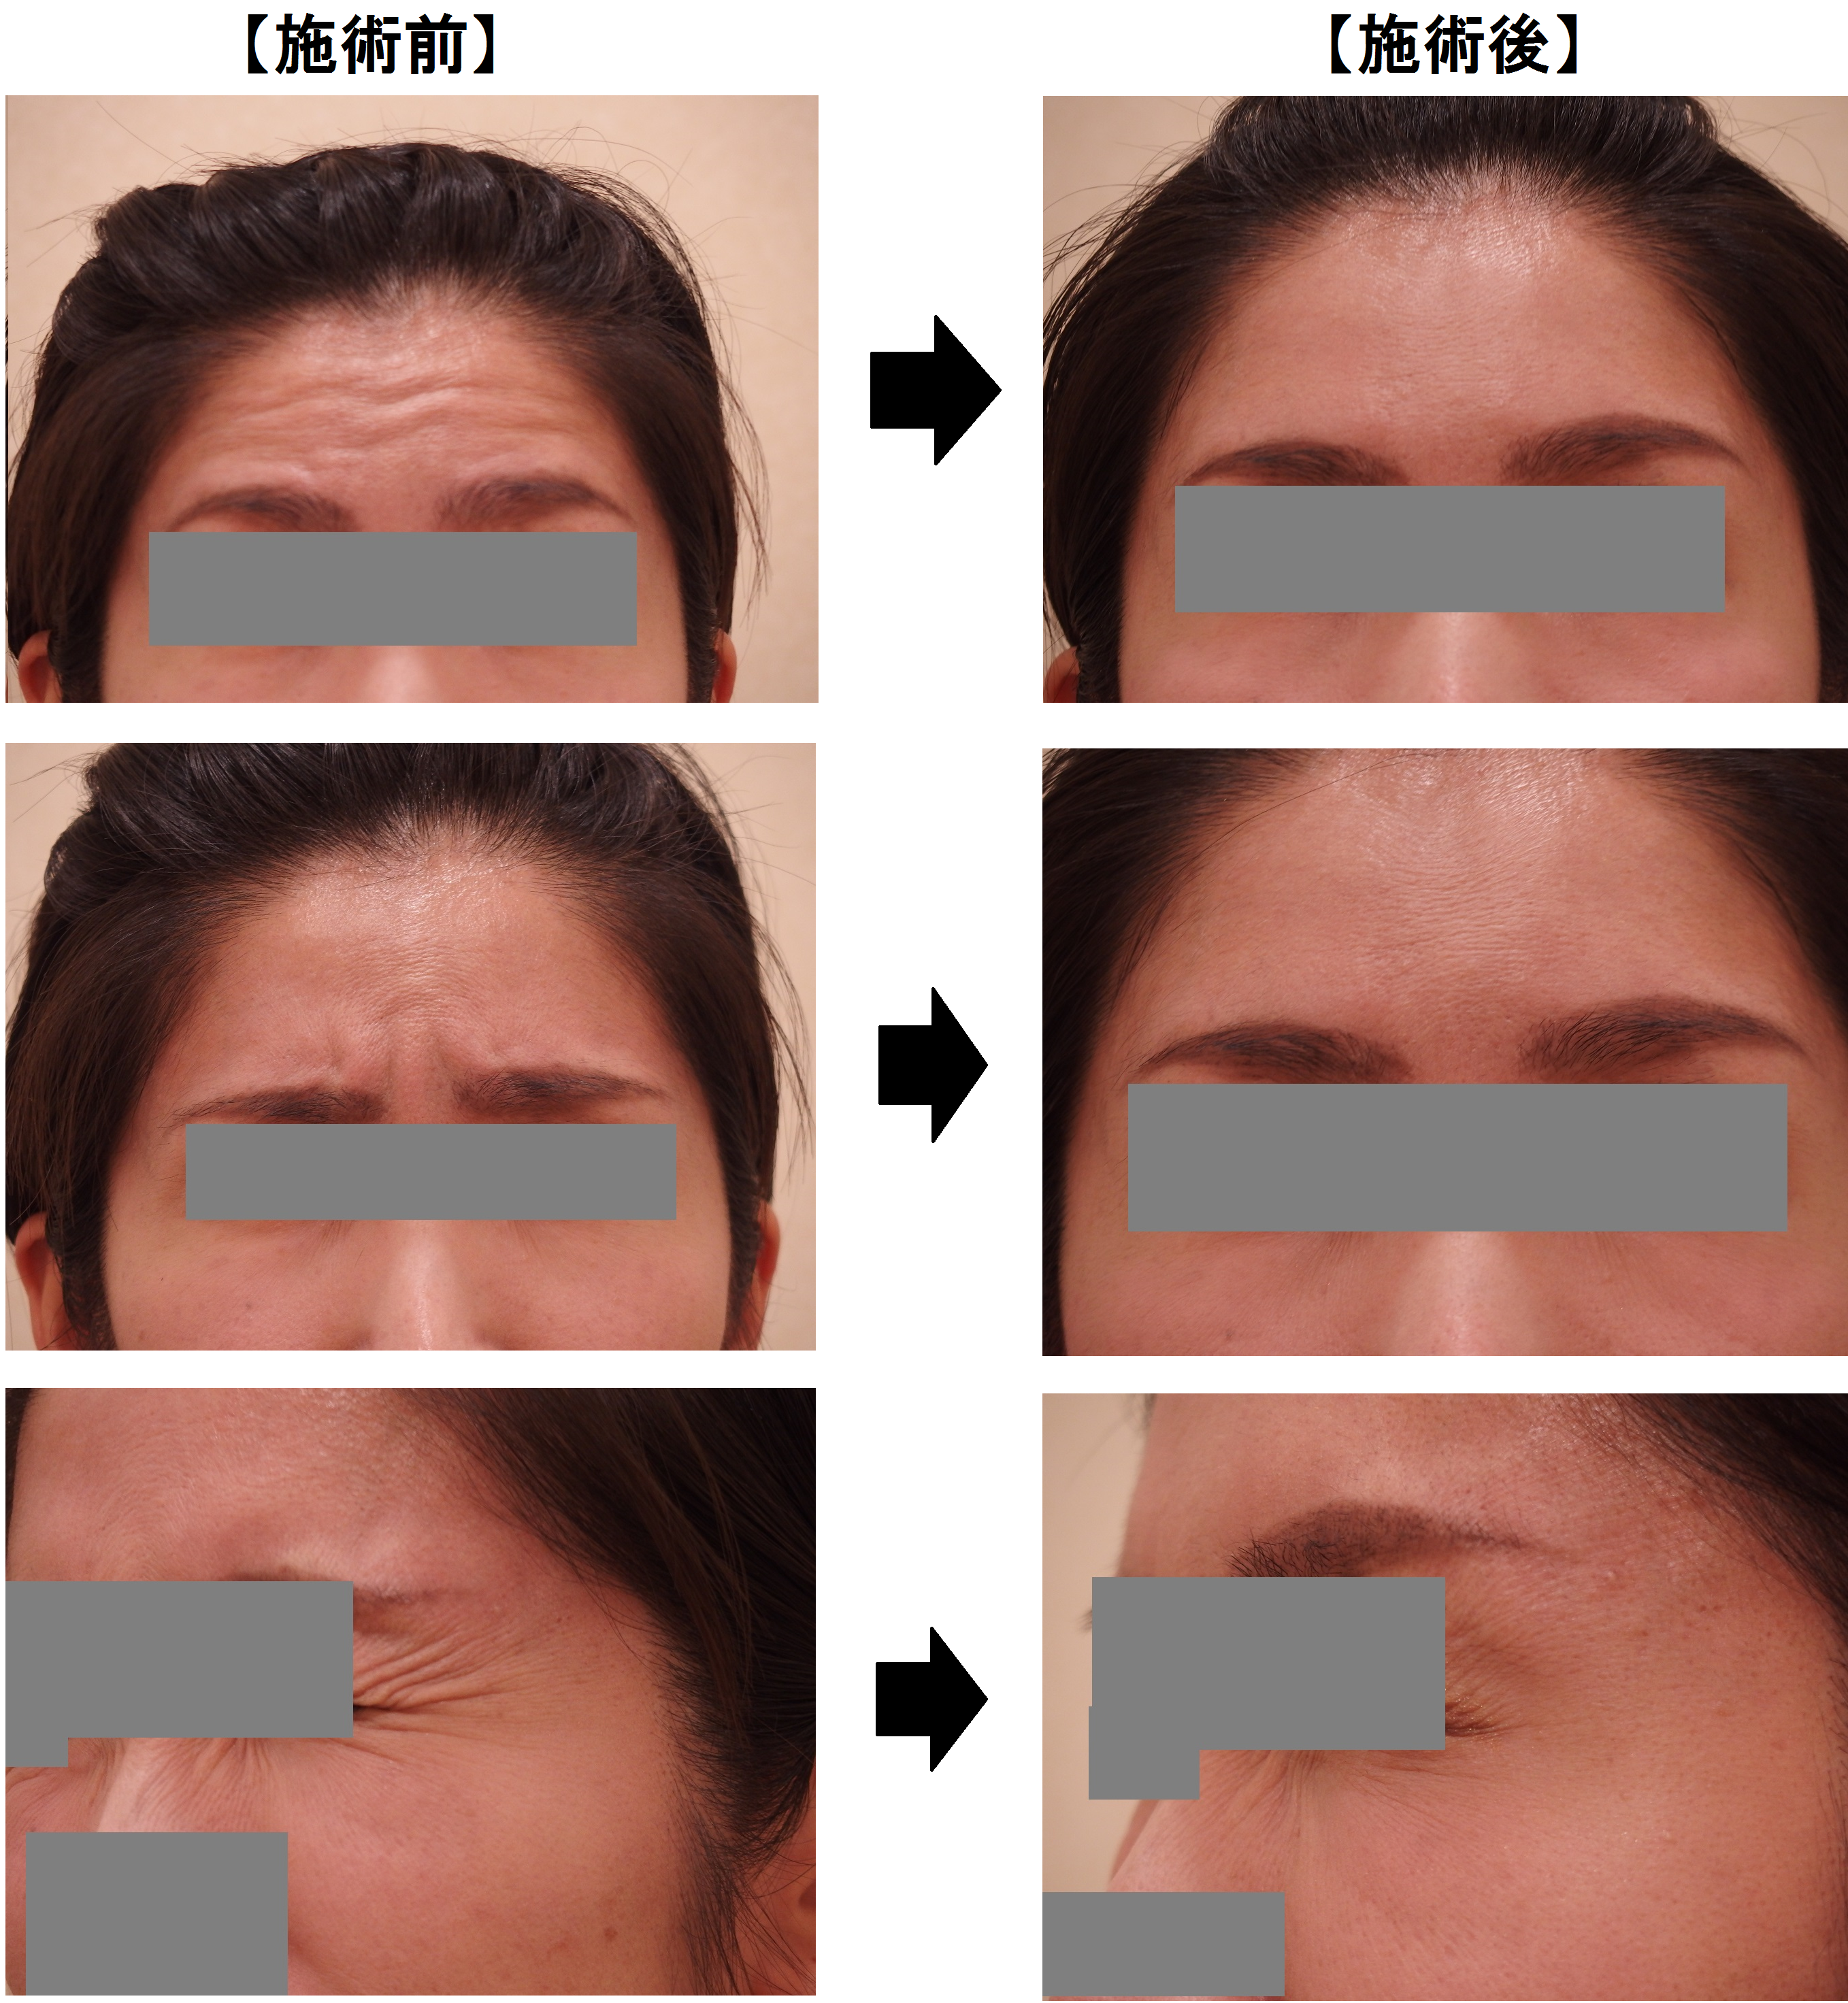 41歳の患者様 額 眉間 目尻のシワ改善 カルミア美肌クリニック 院長の症例ブログ